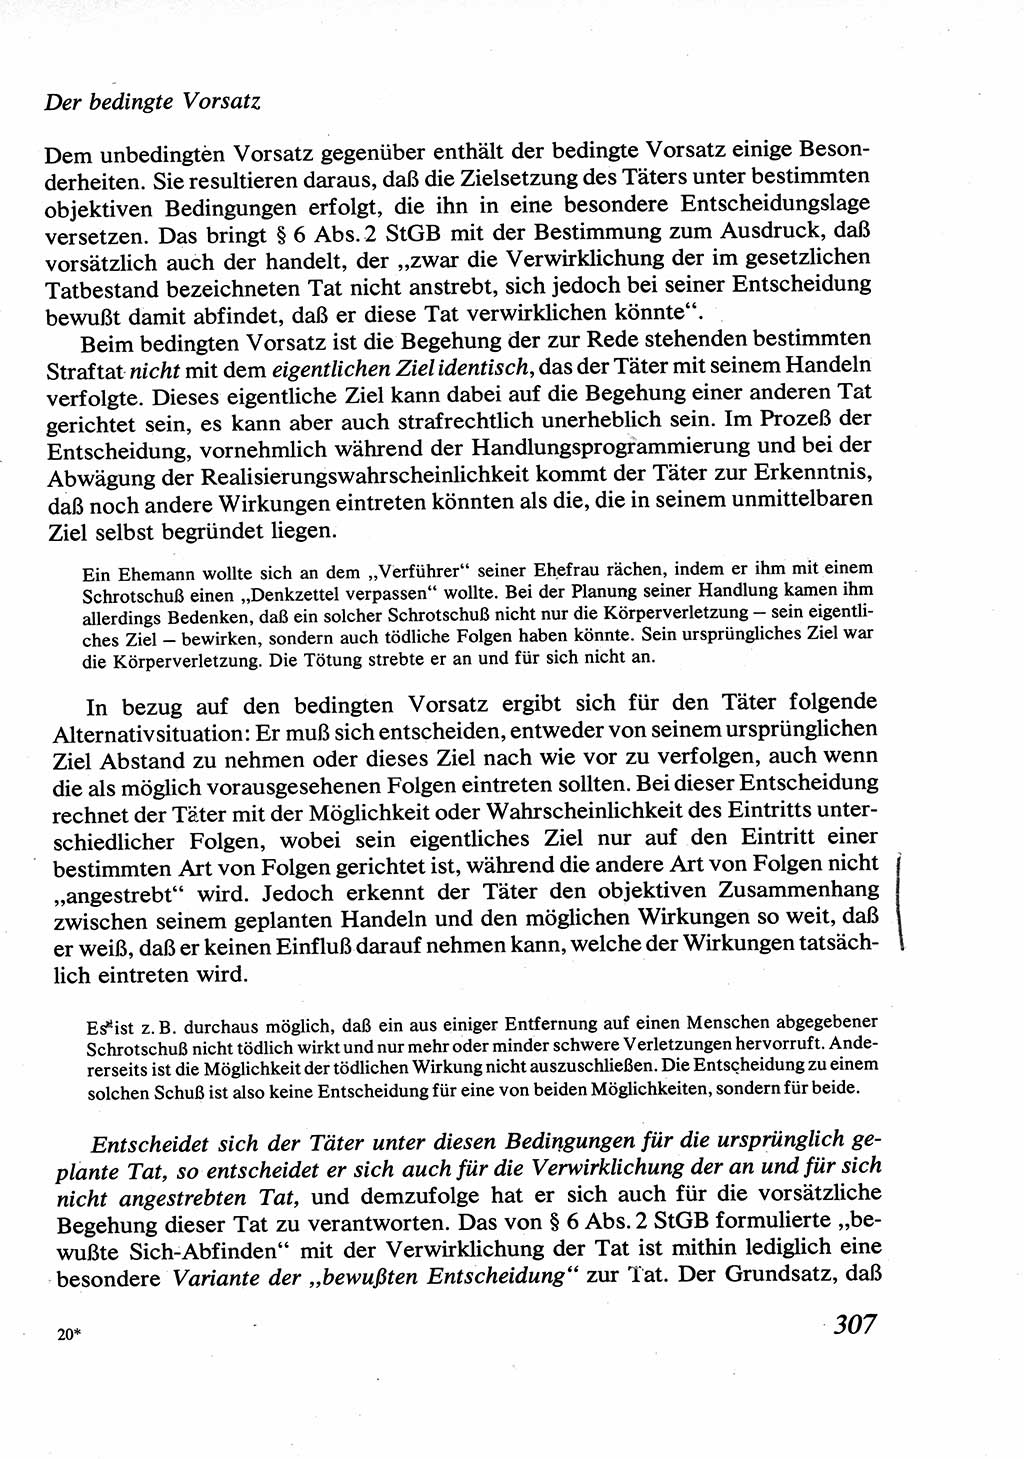 Strafrecht [Deutsche Demokratische Republik (DDR)], Allgemeiner Teil, Lehrbuch 1976, Seite 307 (Strafr. DDR AT Lb. 1976, S. 307)